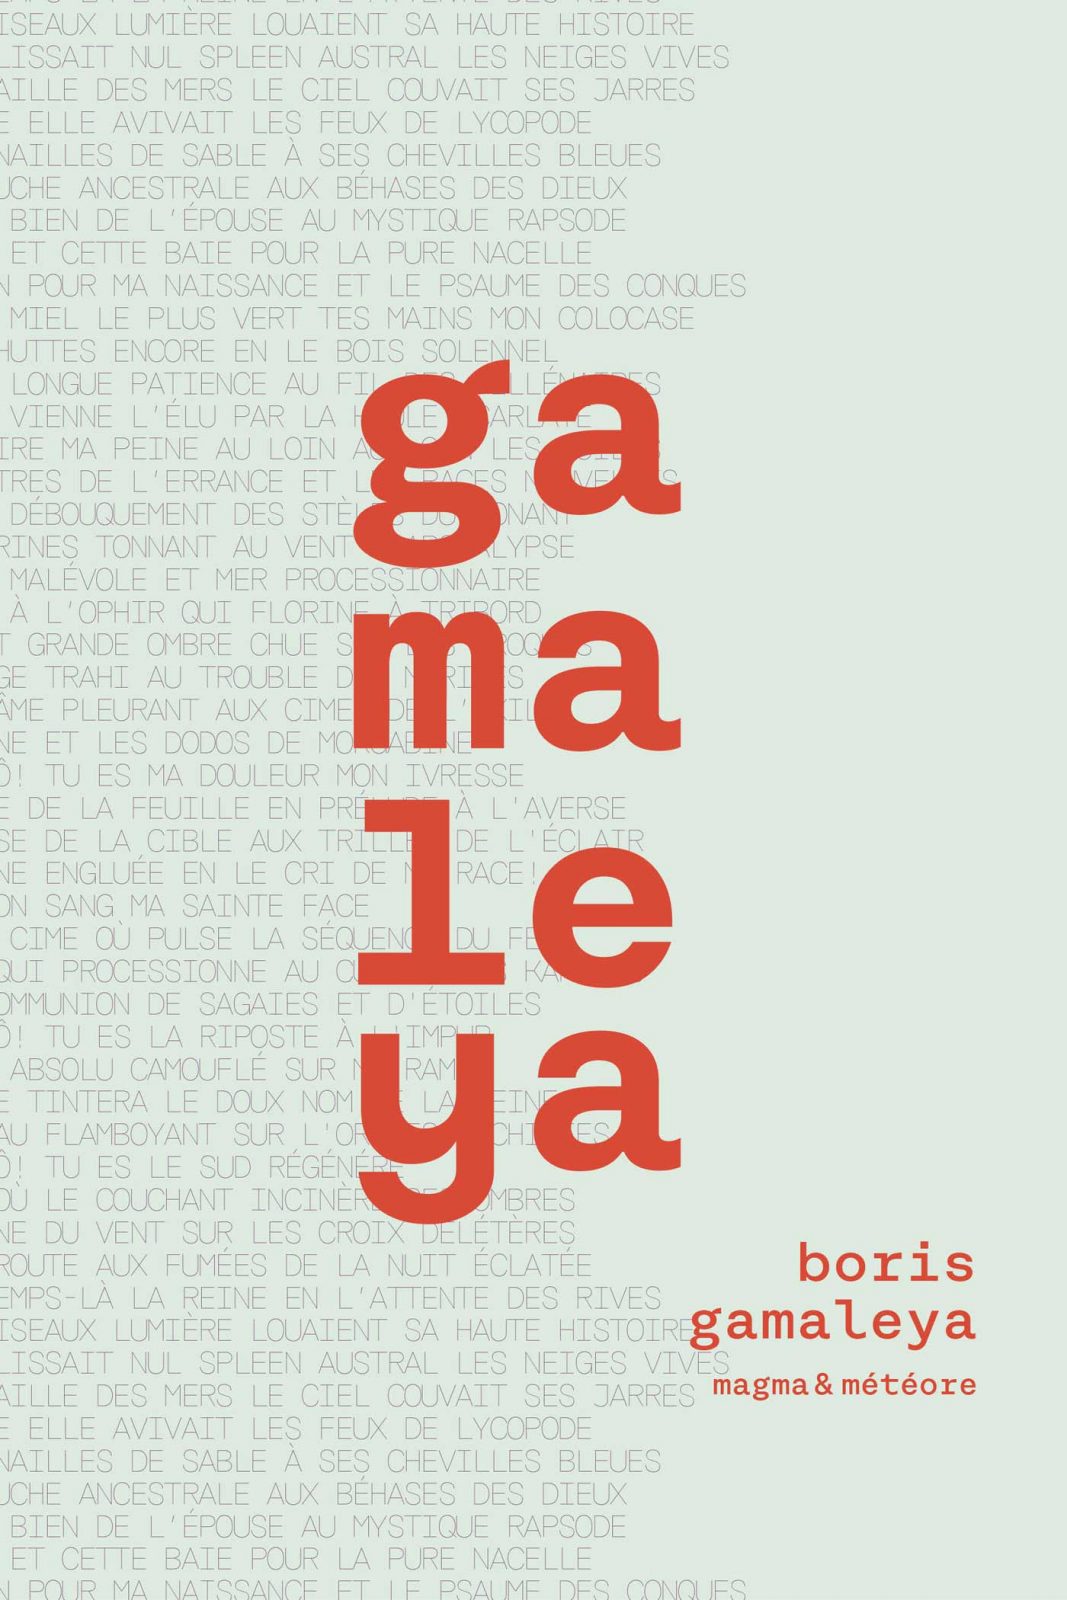 Boris Gamaleya, le livret